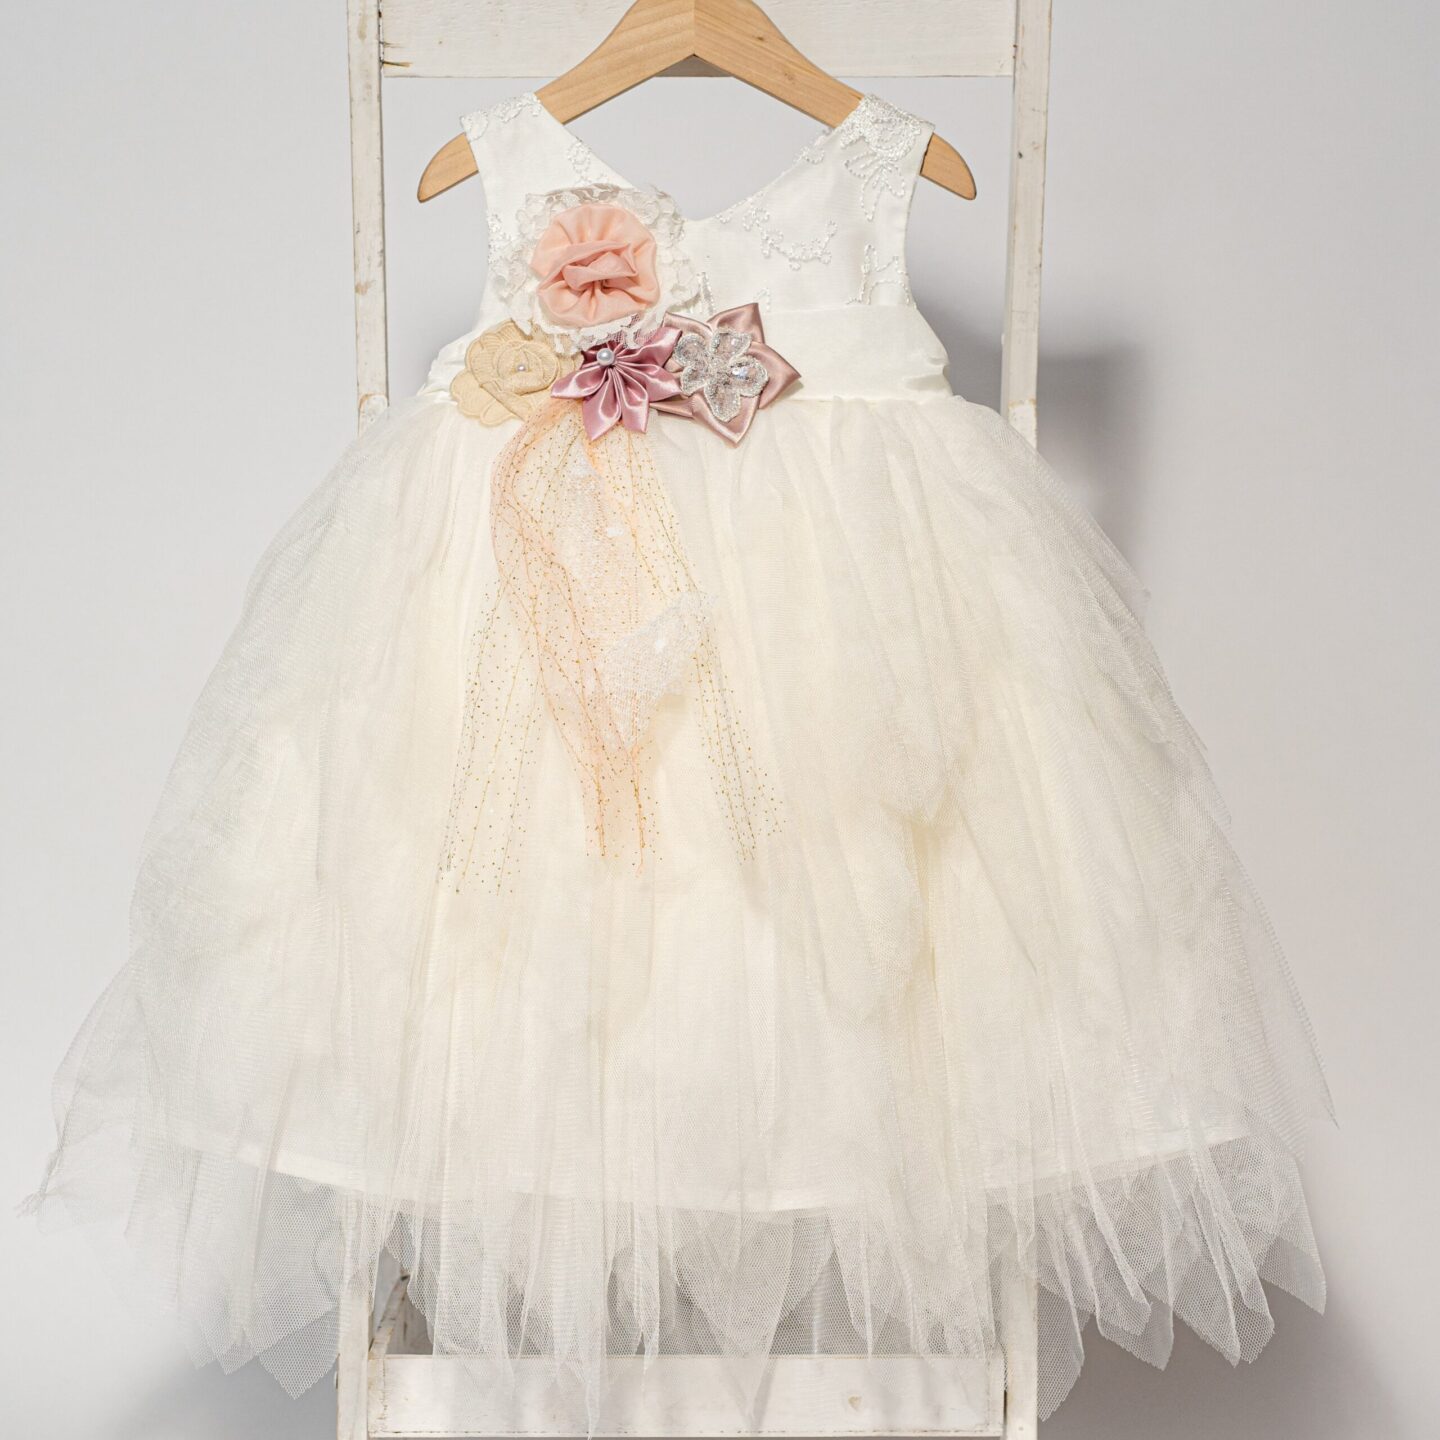 Νεραϊδένιο βαπτιστικό φόρεμα με ασύμμετρο άσπρο γαλλικό τούλι